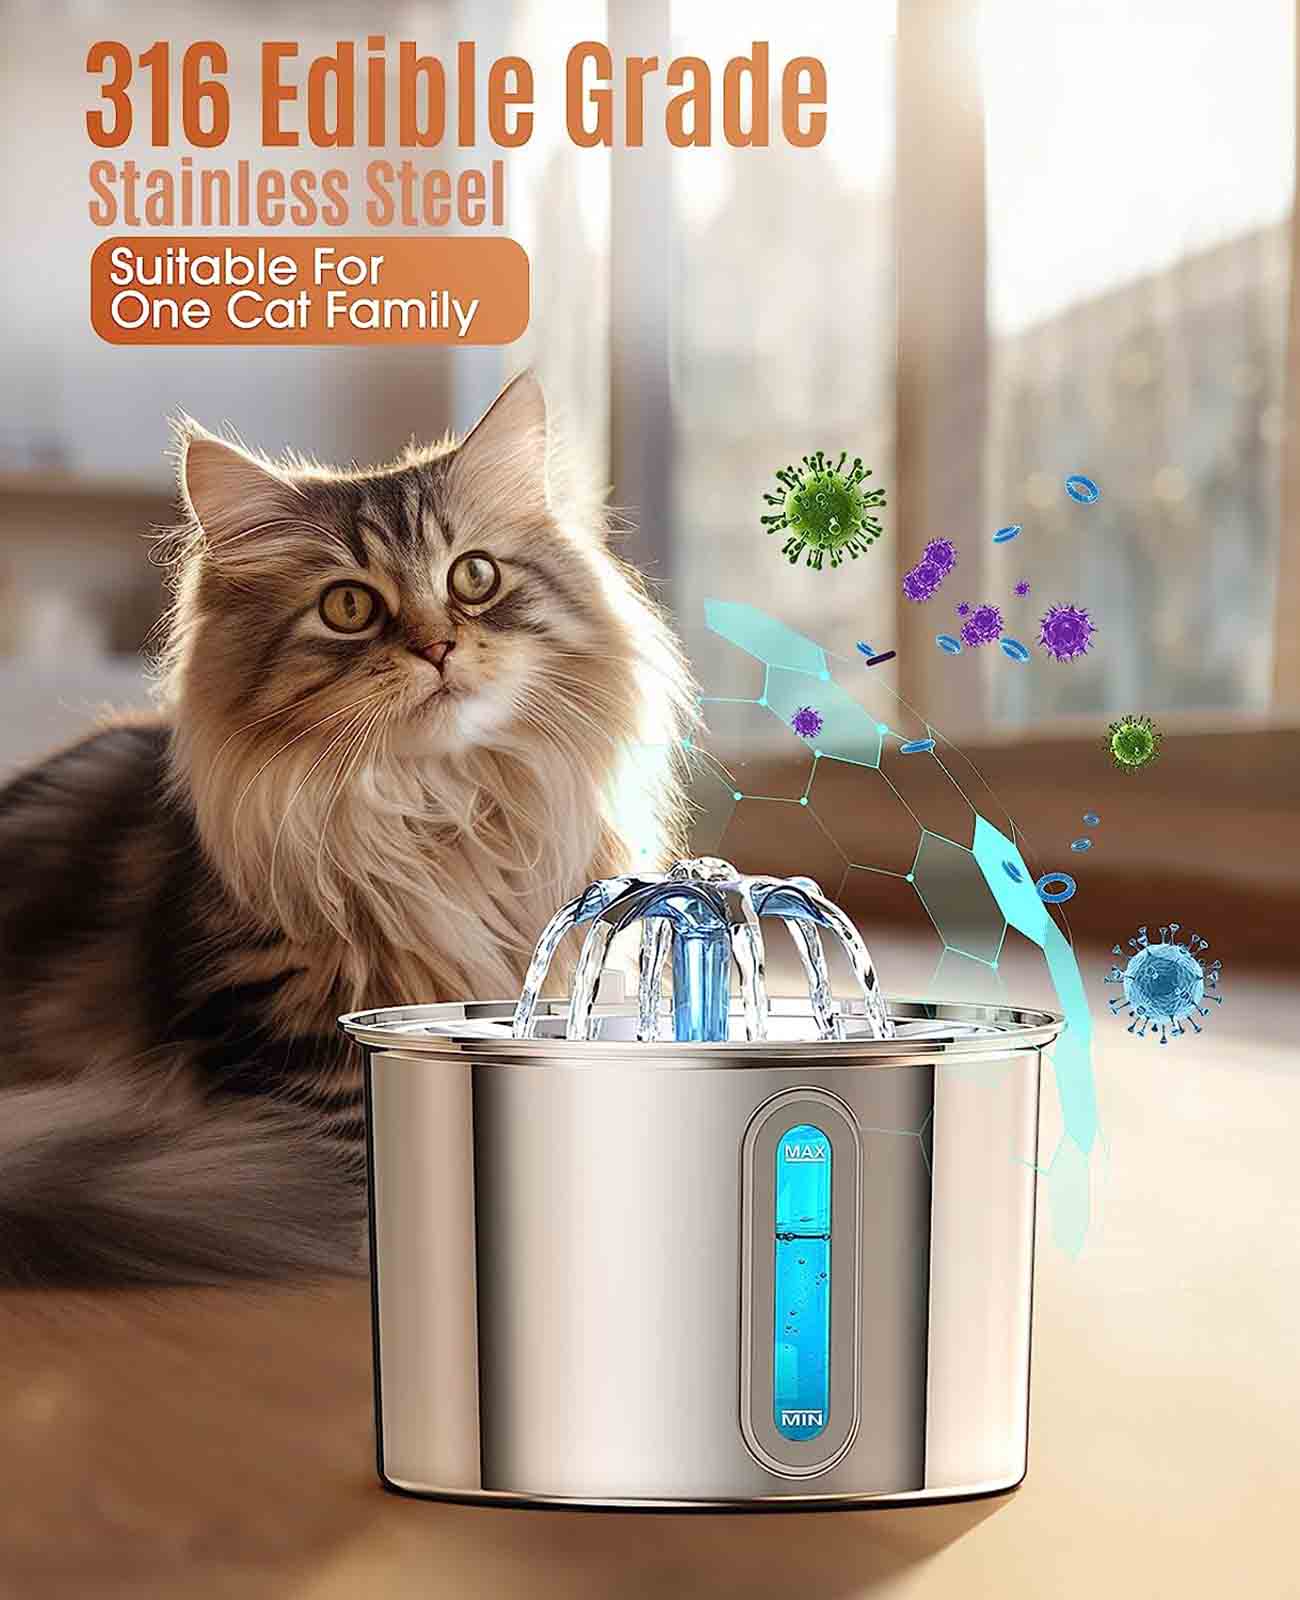 
                  
                    Oneisall Model-PWF-001 Abbeveratoio per gatti, filtro per l'acqua automatico silenzioso da 2 litri, abbeveratoio per animali domestici, acciaio inossidabile 316, filtri per ammorbidenti x 3 set
                  
                